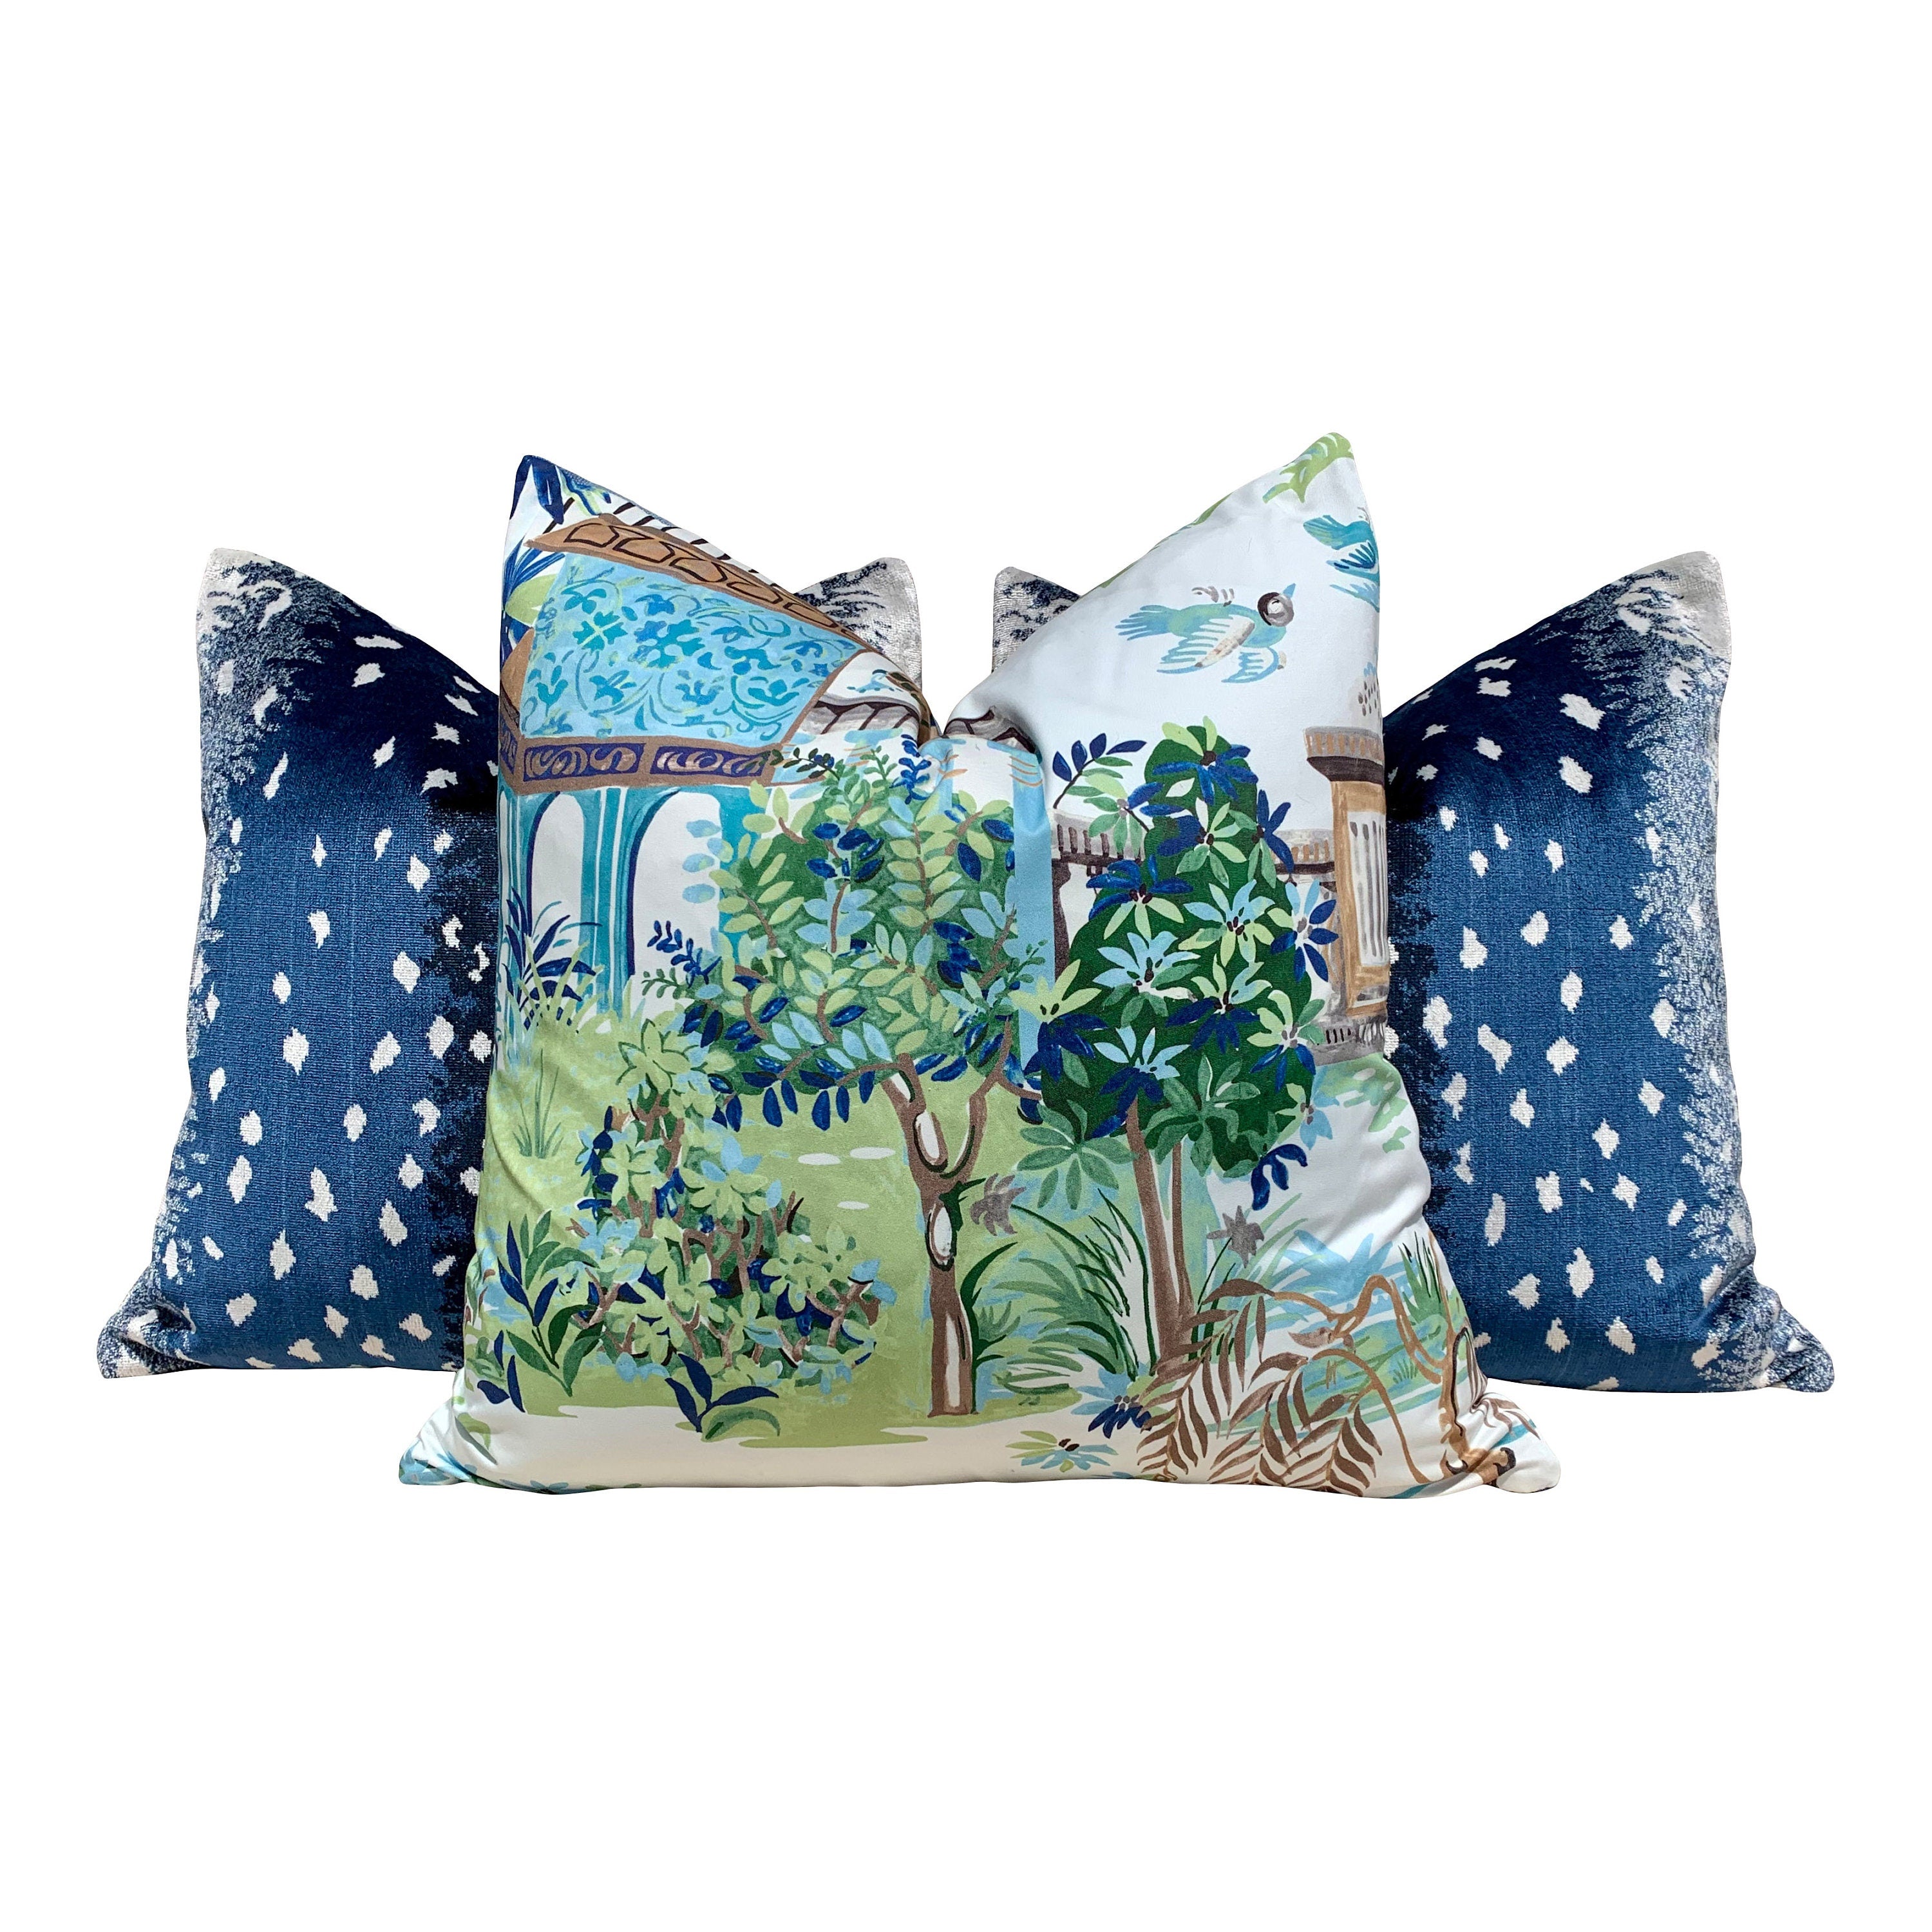 Antelope Velvet Pillow In Midnight. Luxury Velvet Pillow in Navy Blue, Lumbar Designer Animal Skin Velvet Pillow Cover Luxurious Gifts